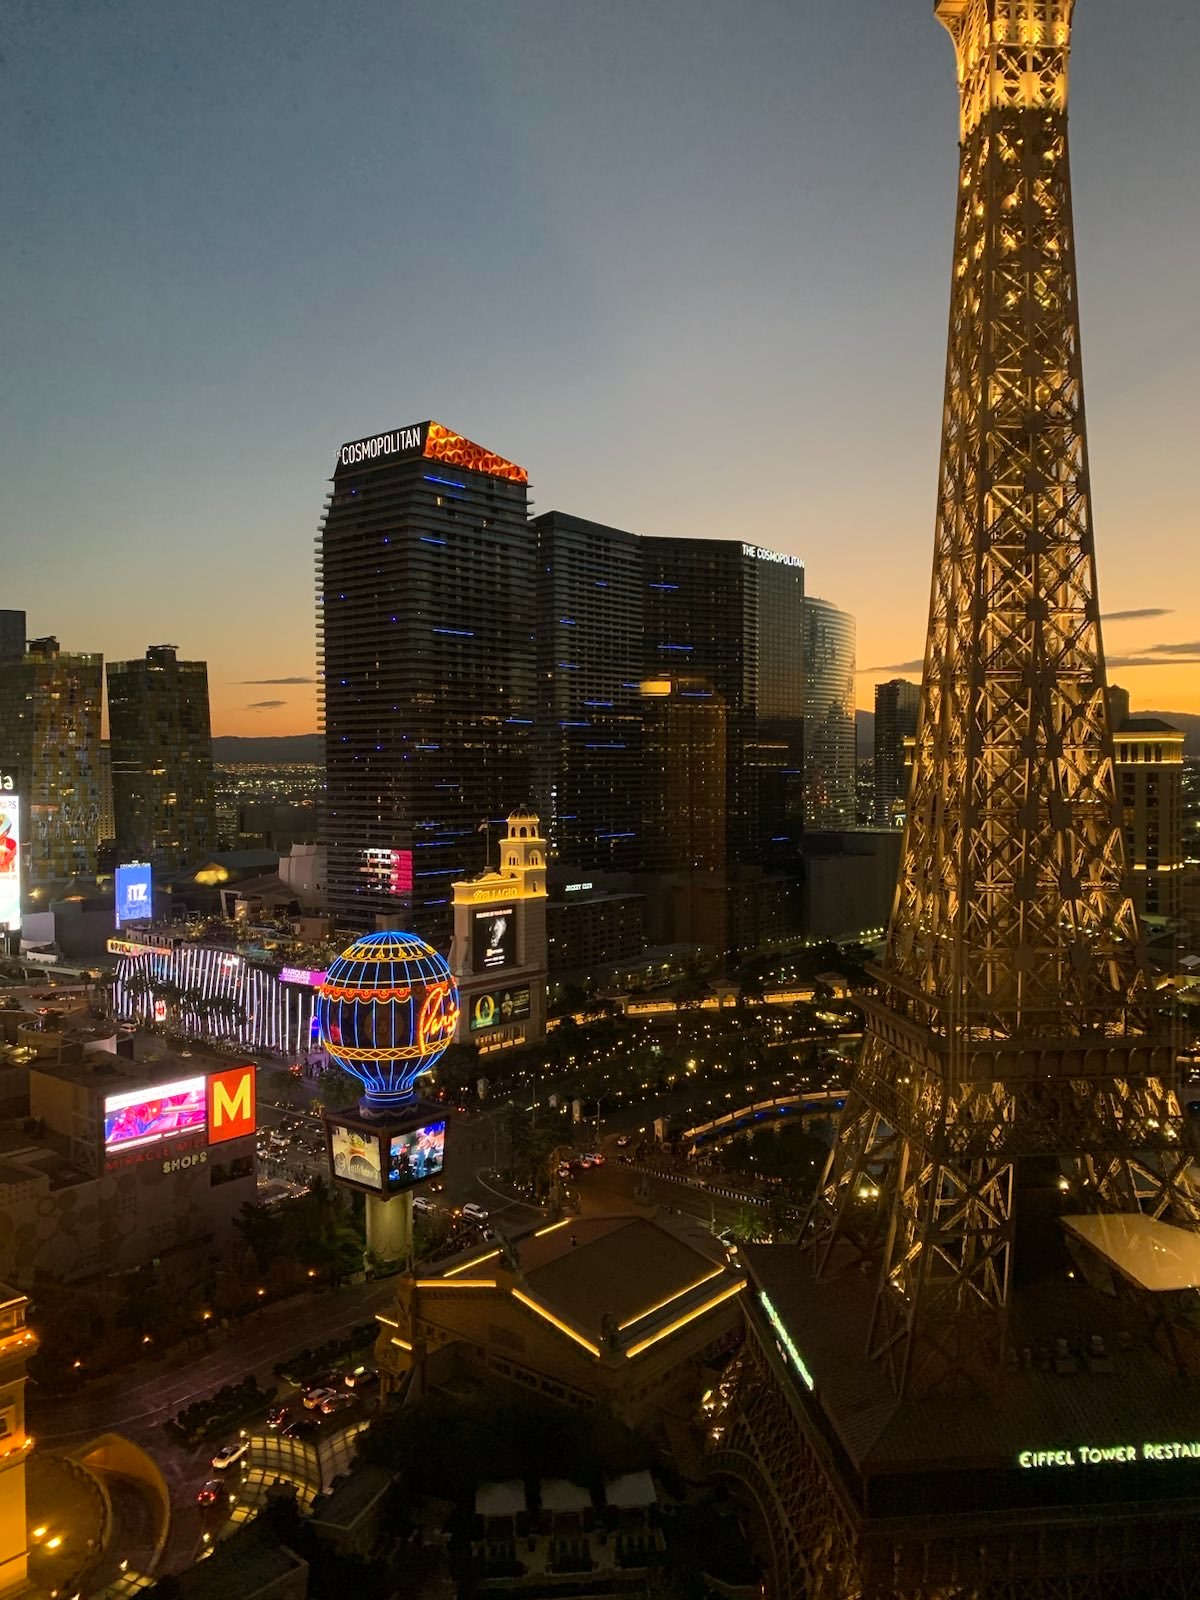 Paris Las Vegas Hotel Review (2023)